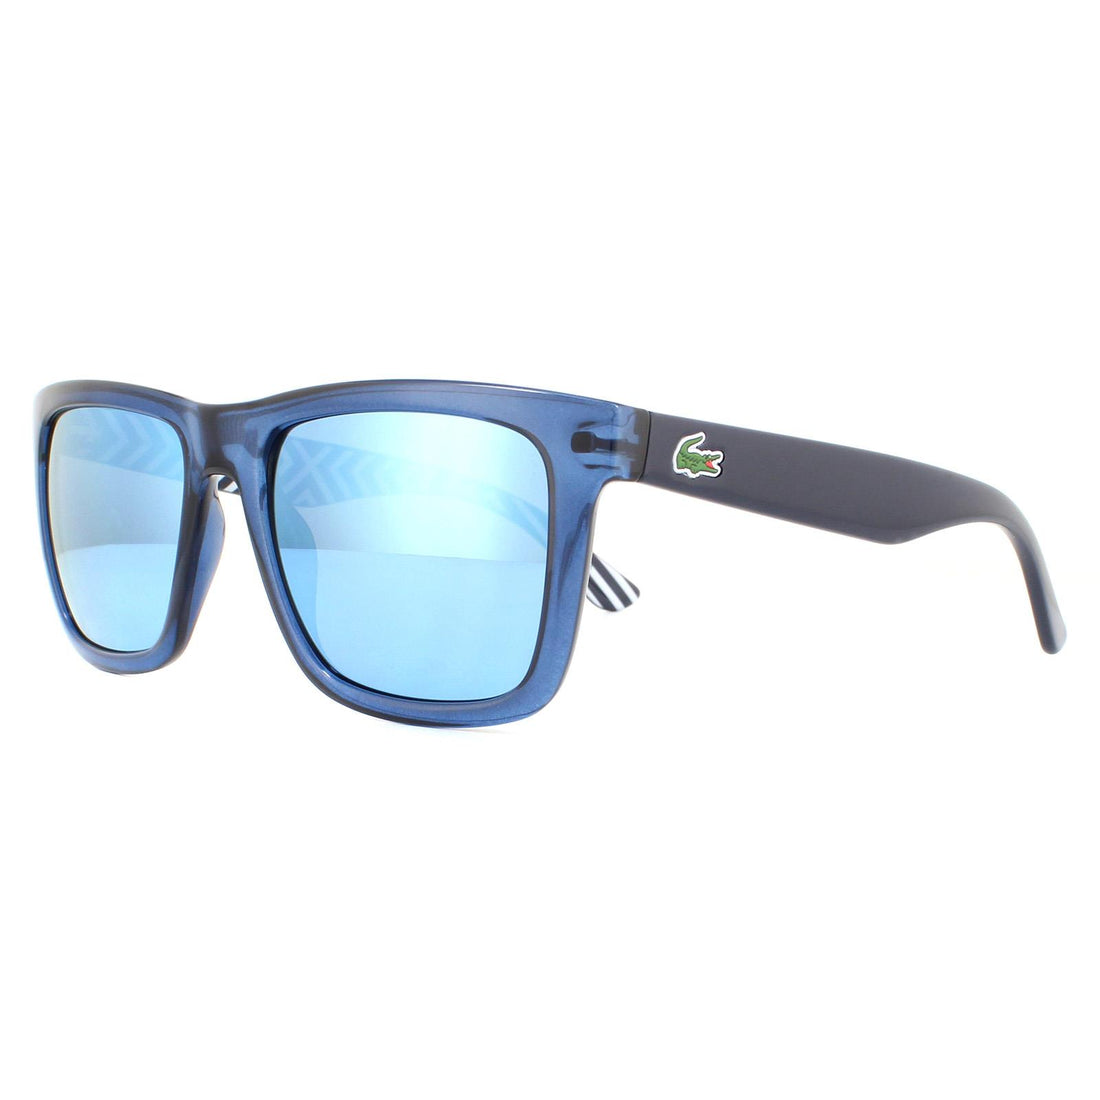 Lacoste Sunglasses L750S 424 Blue Blue Mirror